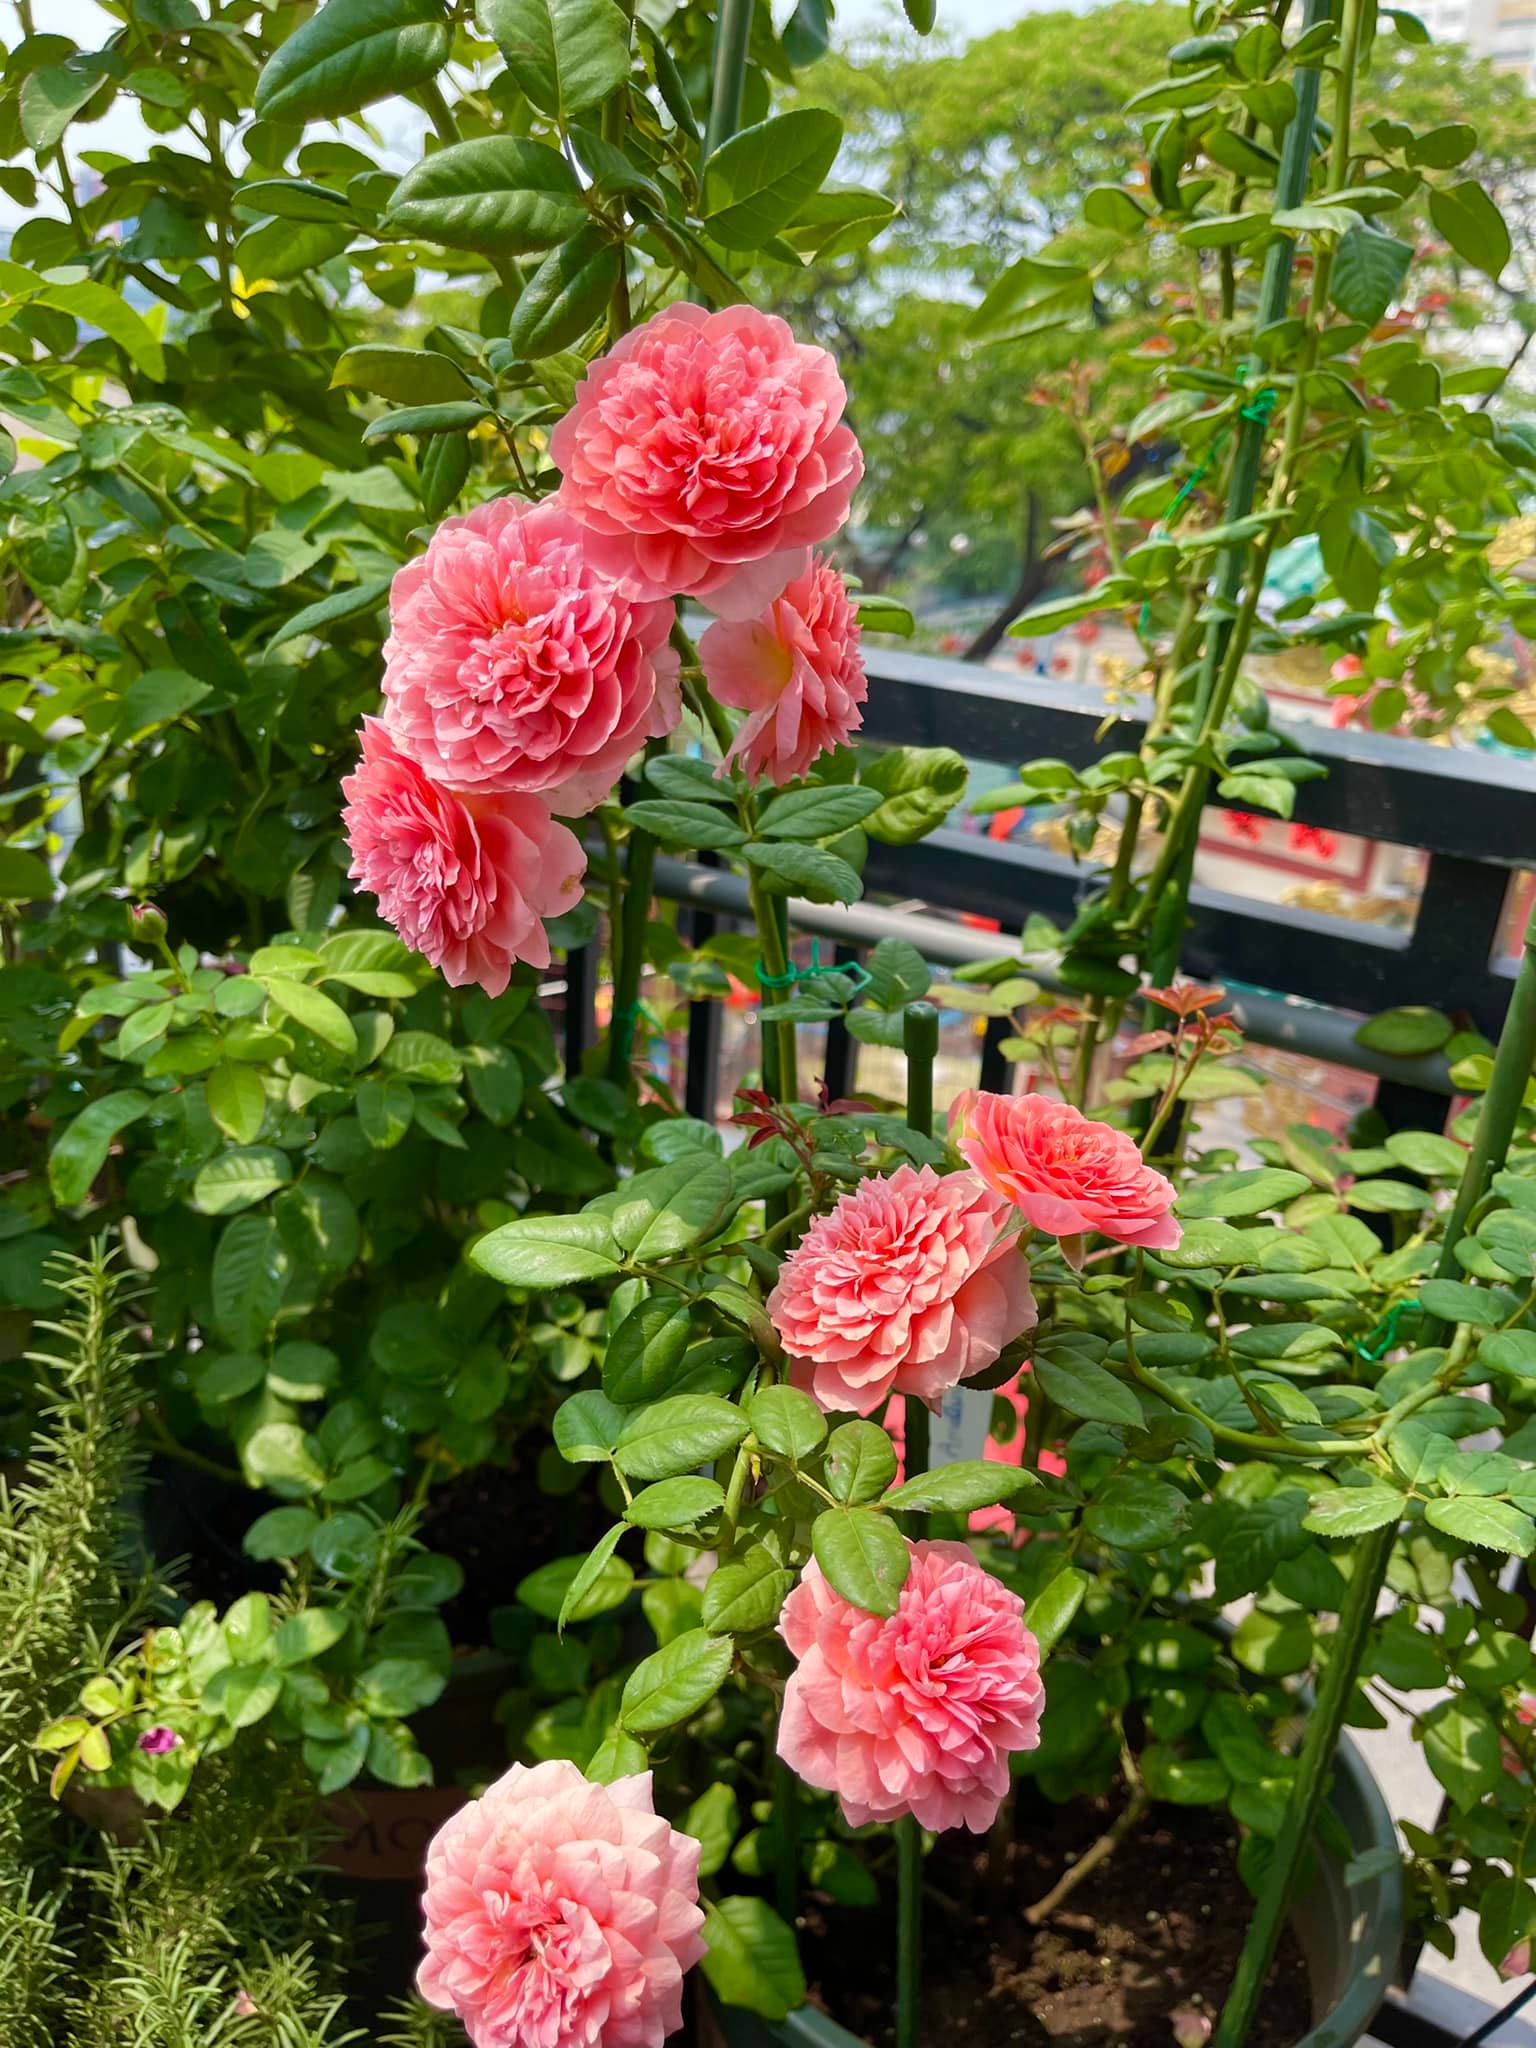 Khu vườn hoa hồng đẹp ngây ngất trên sân thượng ở TP HCM - Ảnh 7.